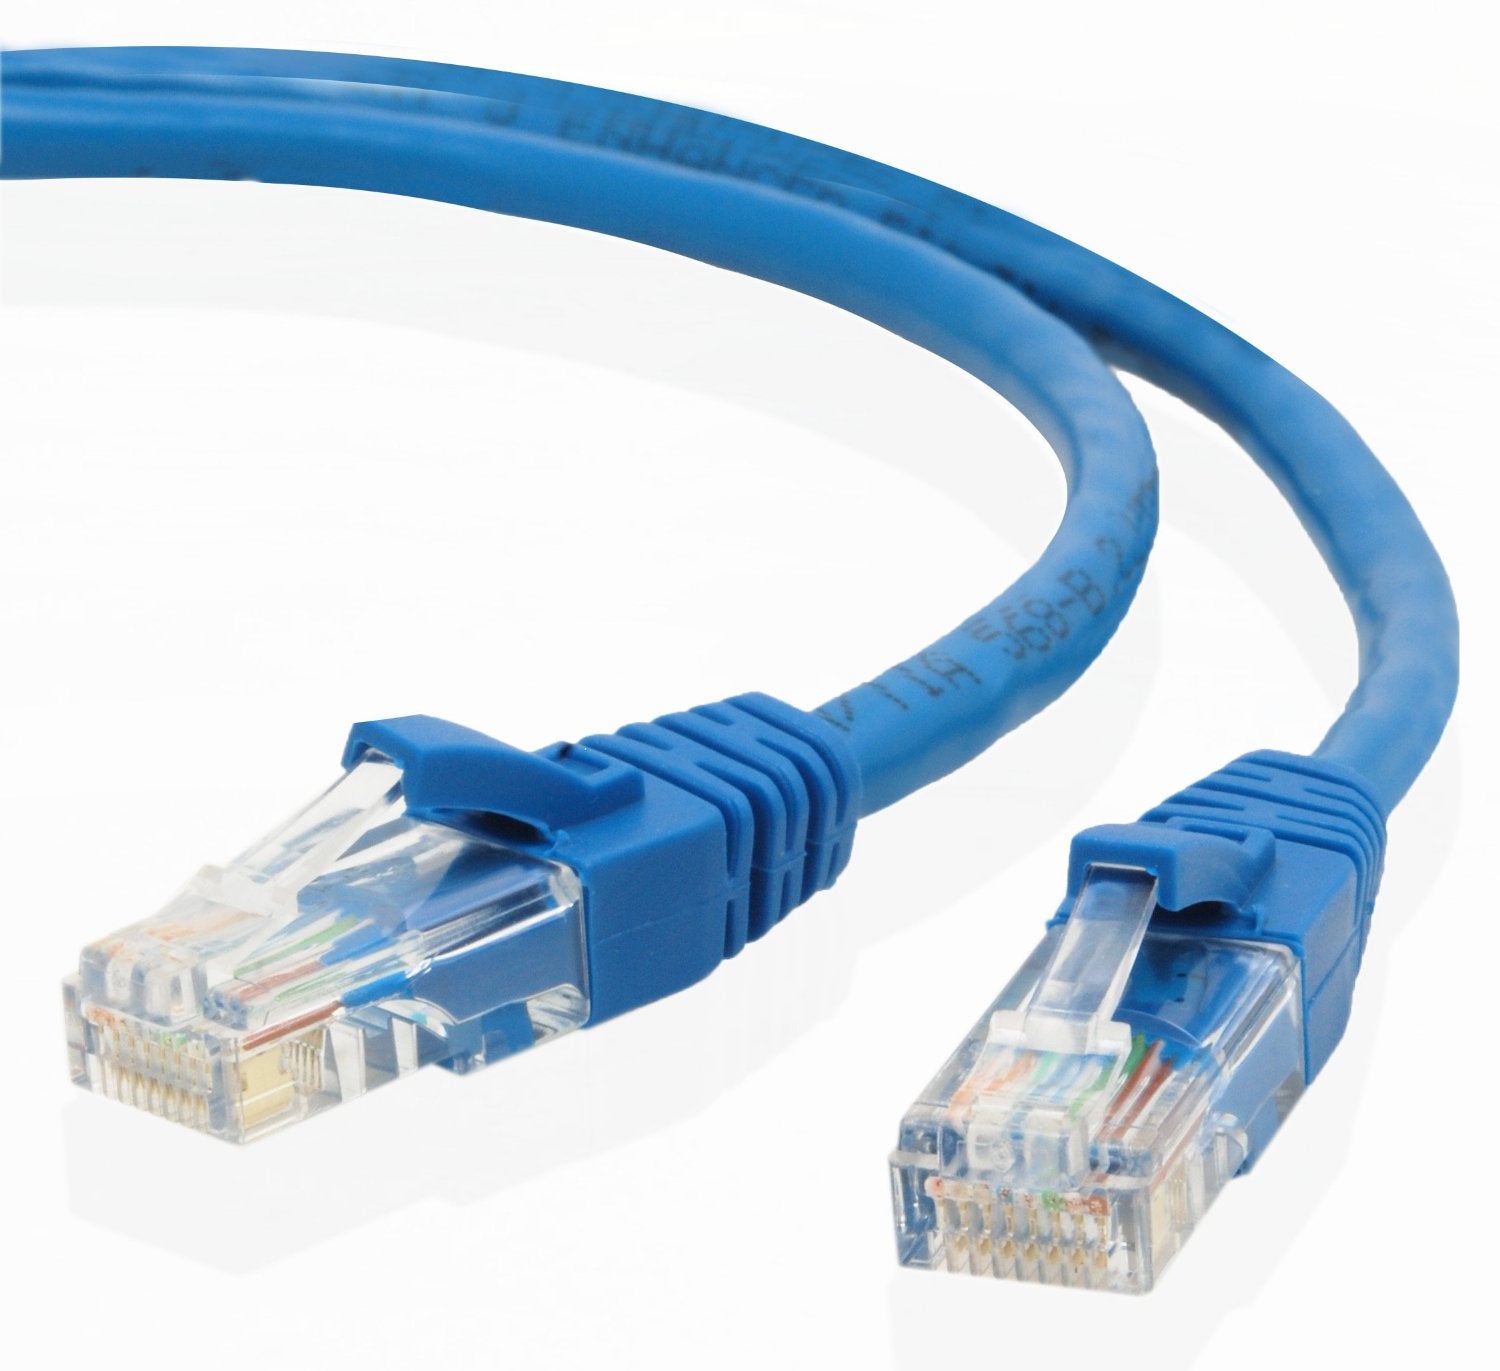 Network Cable - 30M RJ45M to RJ45M Cat5E UTP